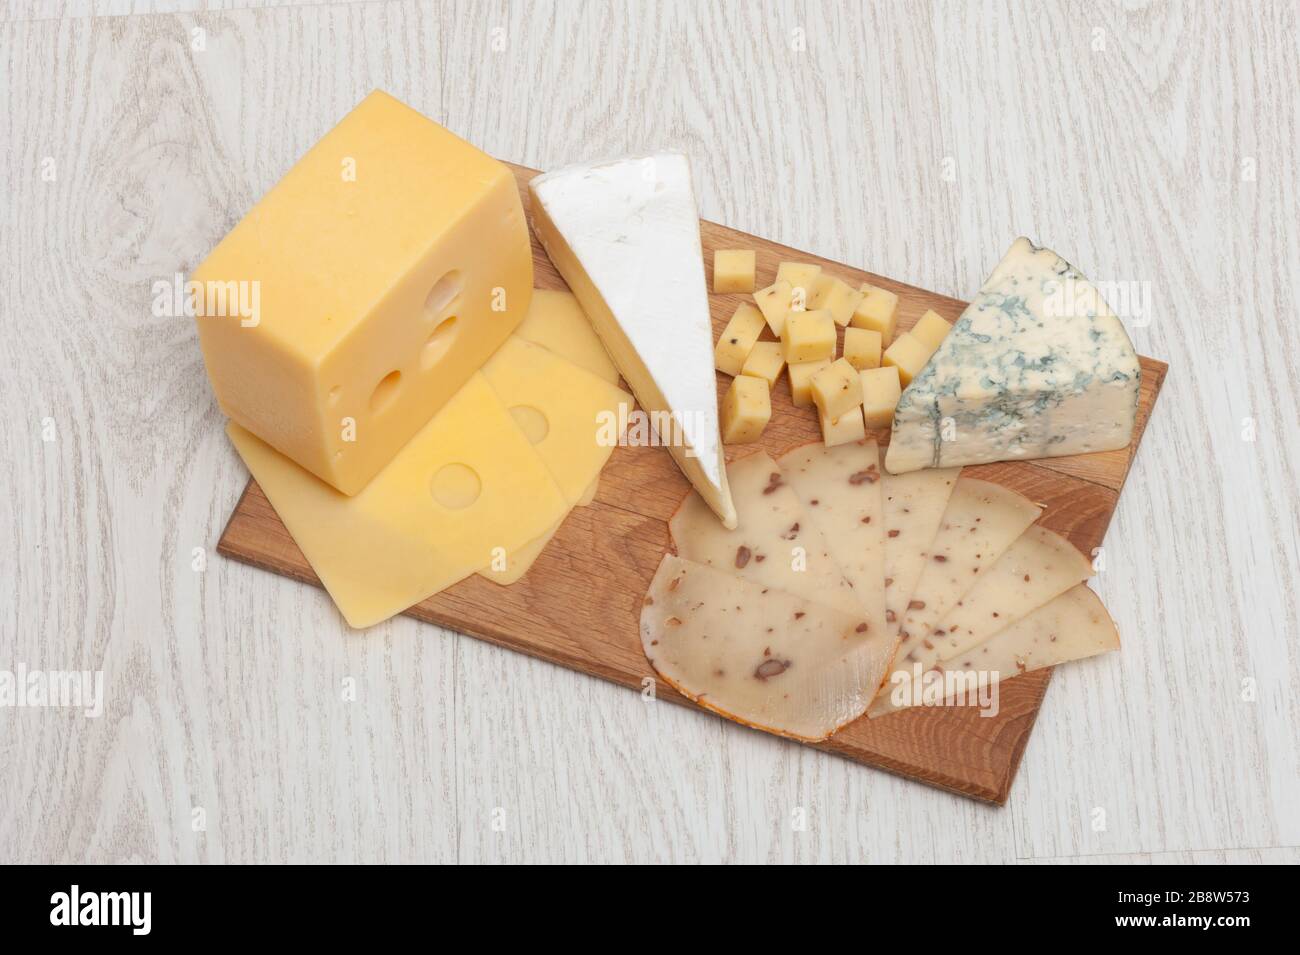 Différents types de fromage Roquefort, fromage à la noix, brie, sur une planche en bois. Banque D'Images